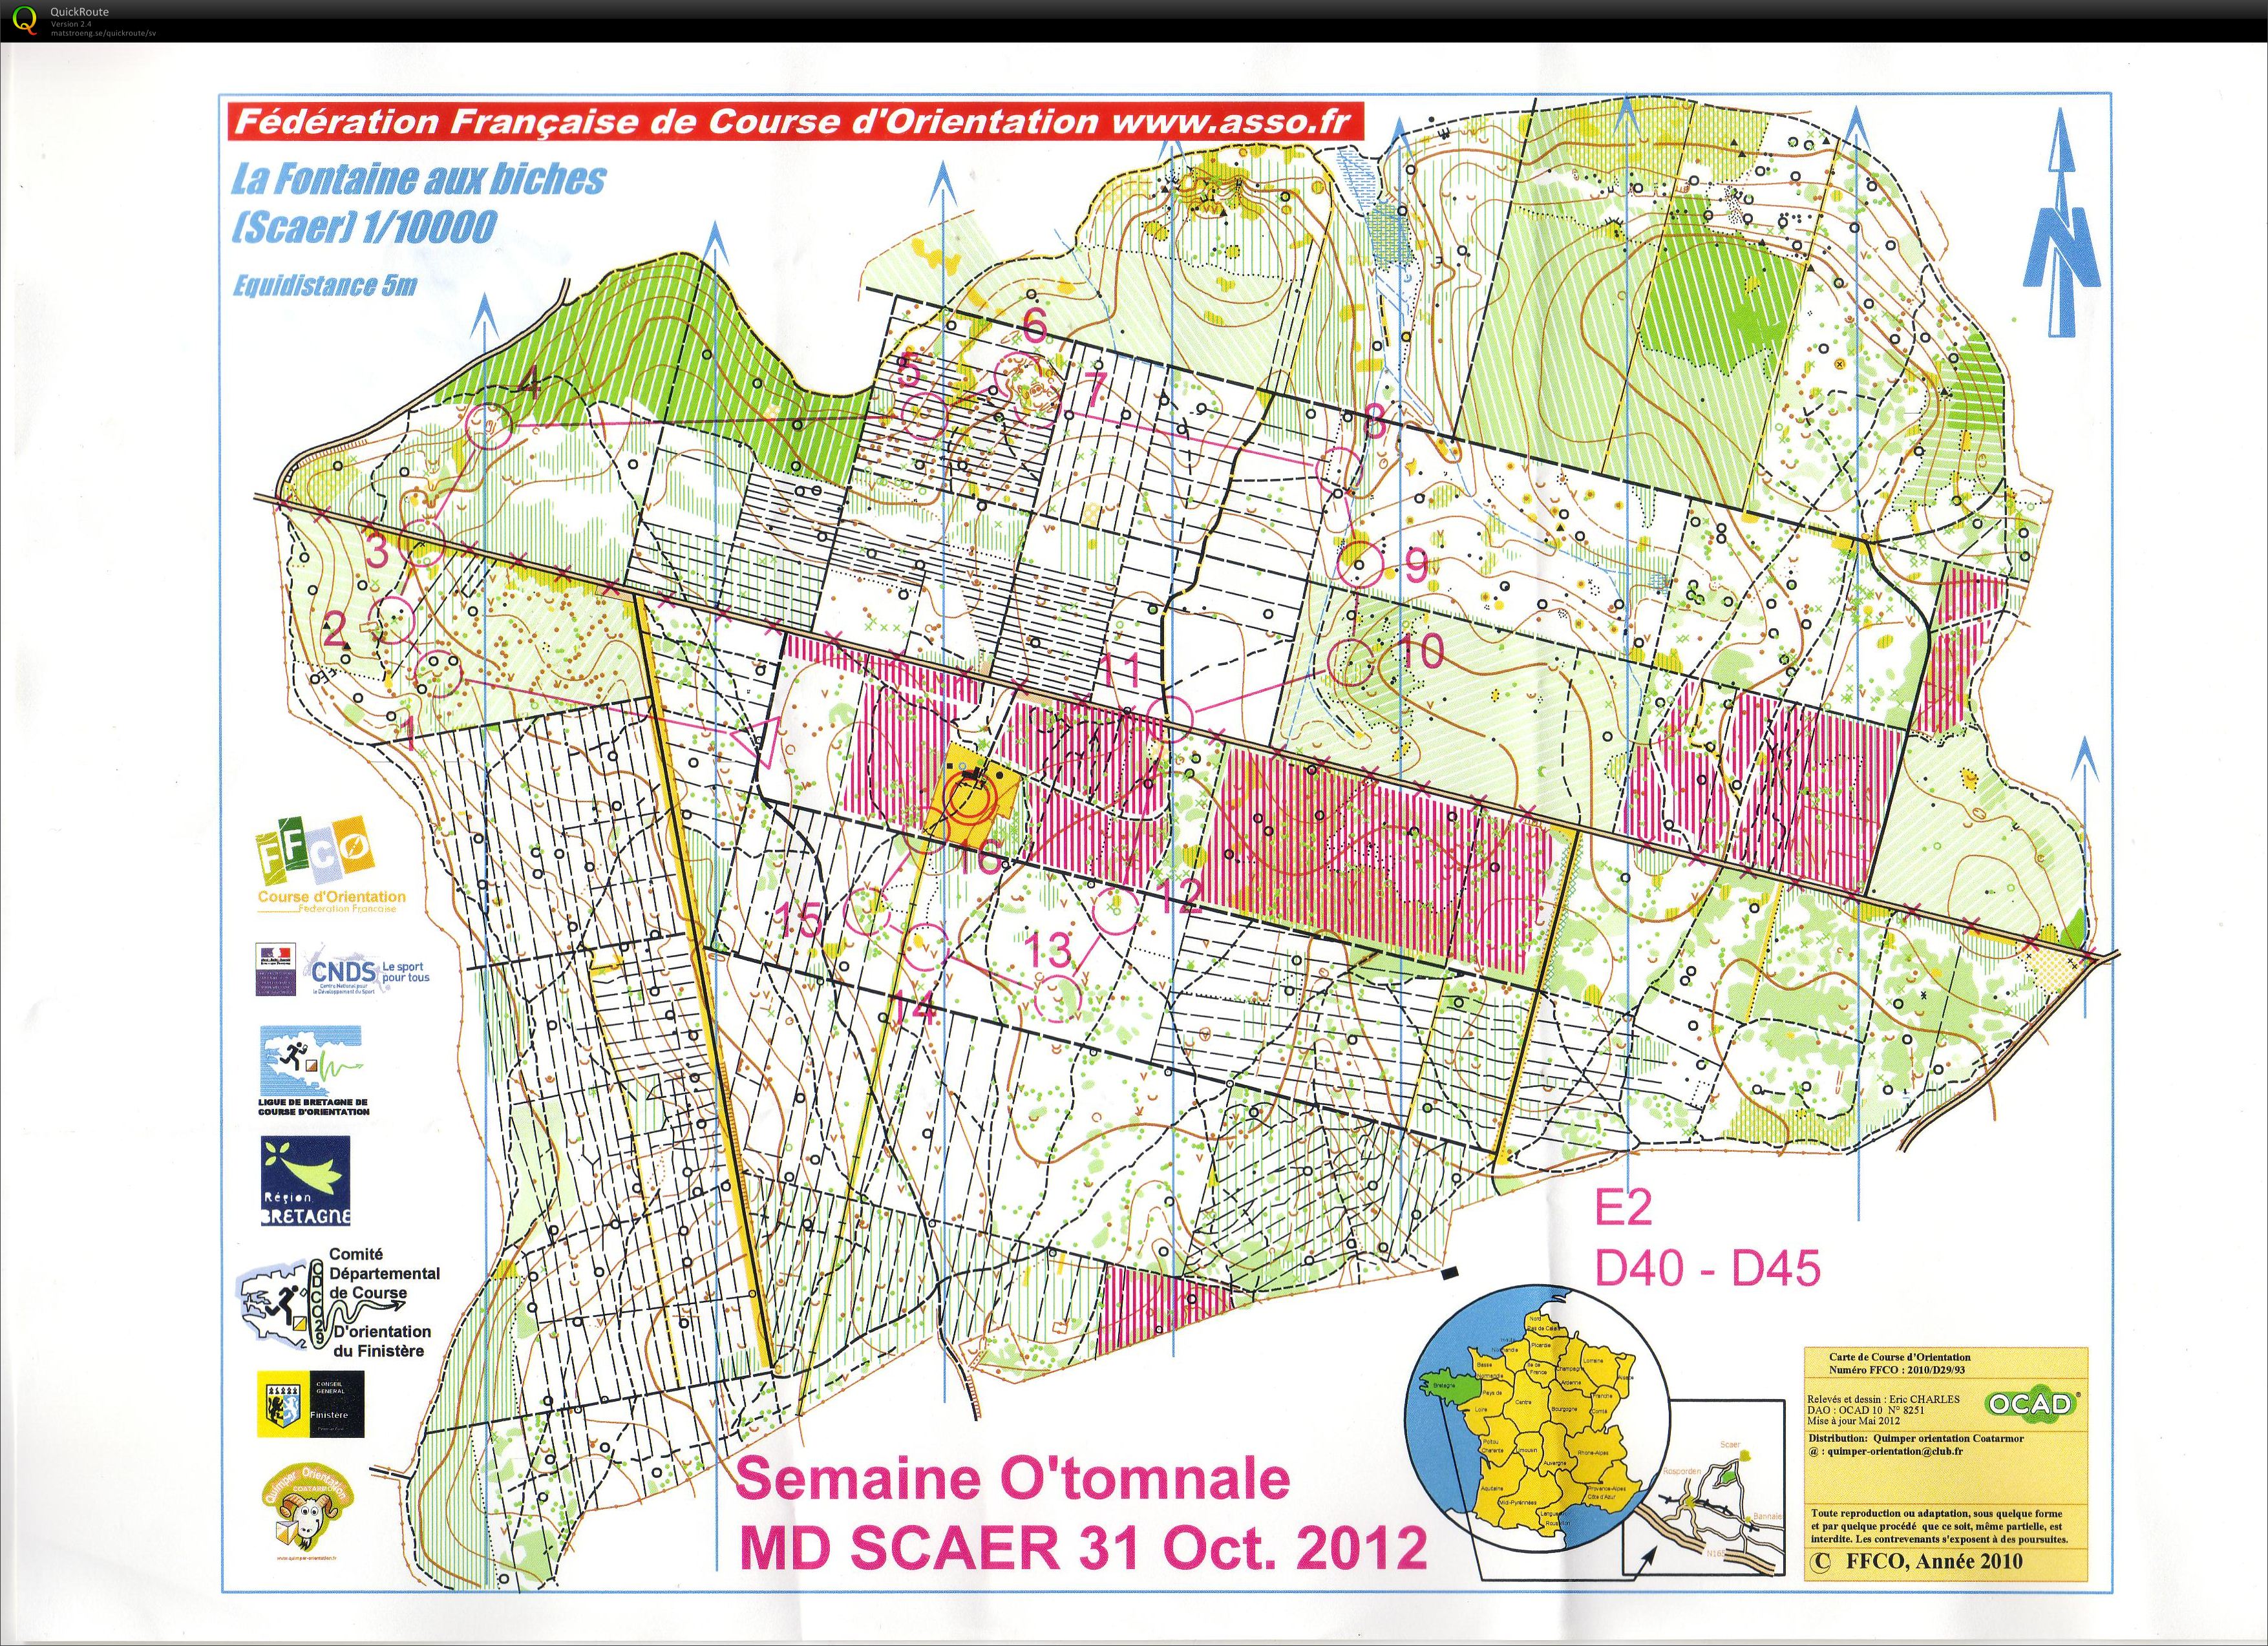 Semaine O'tomnale - E2 (2012-10-31)